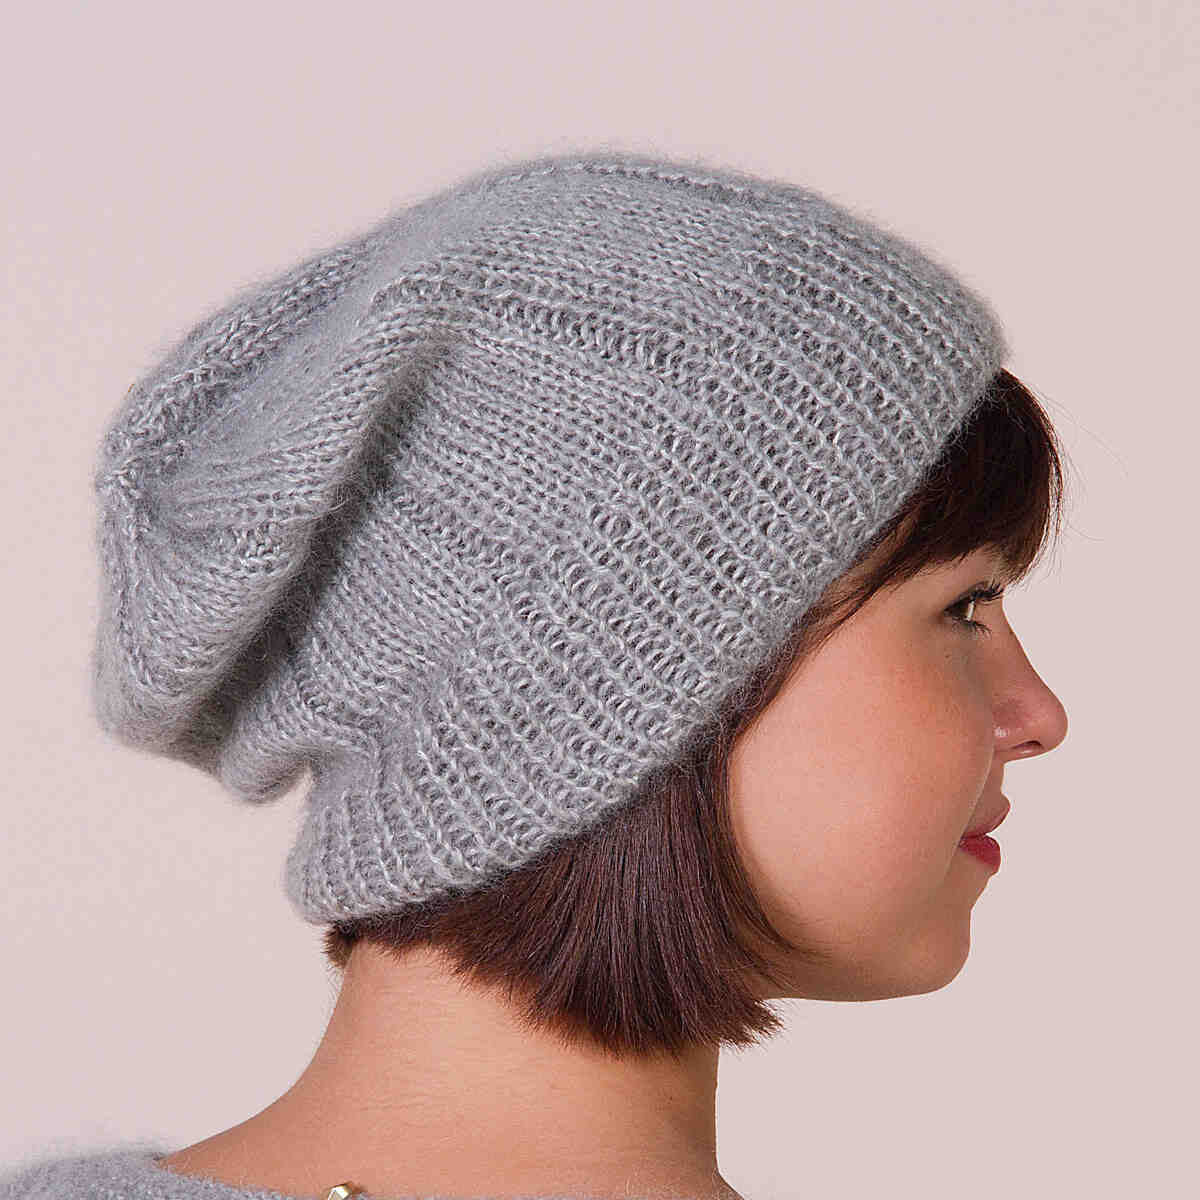 Comment tricoter un bonnet avec des aiguilles droites?